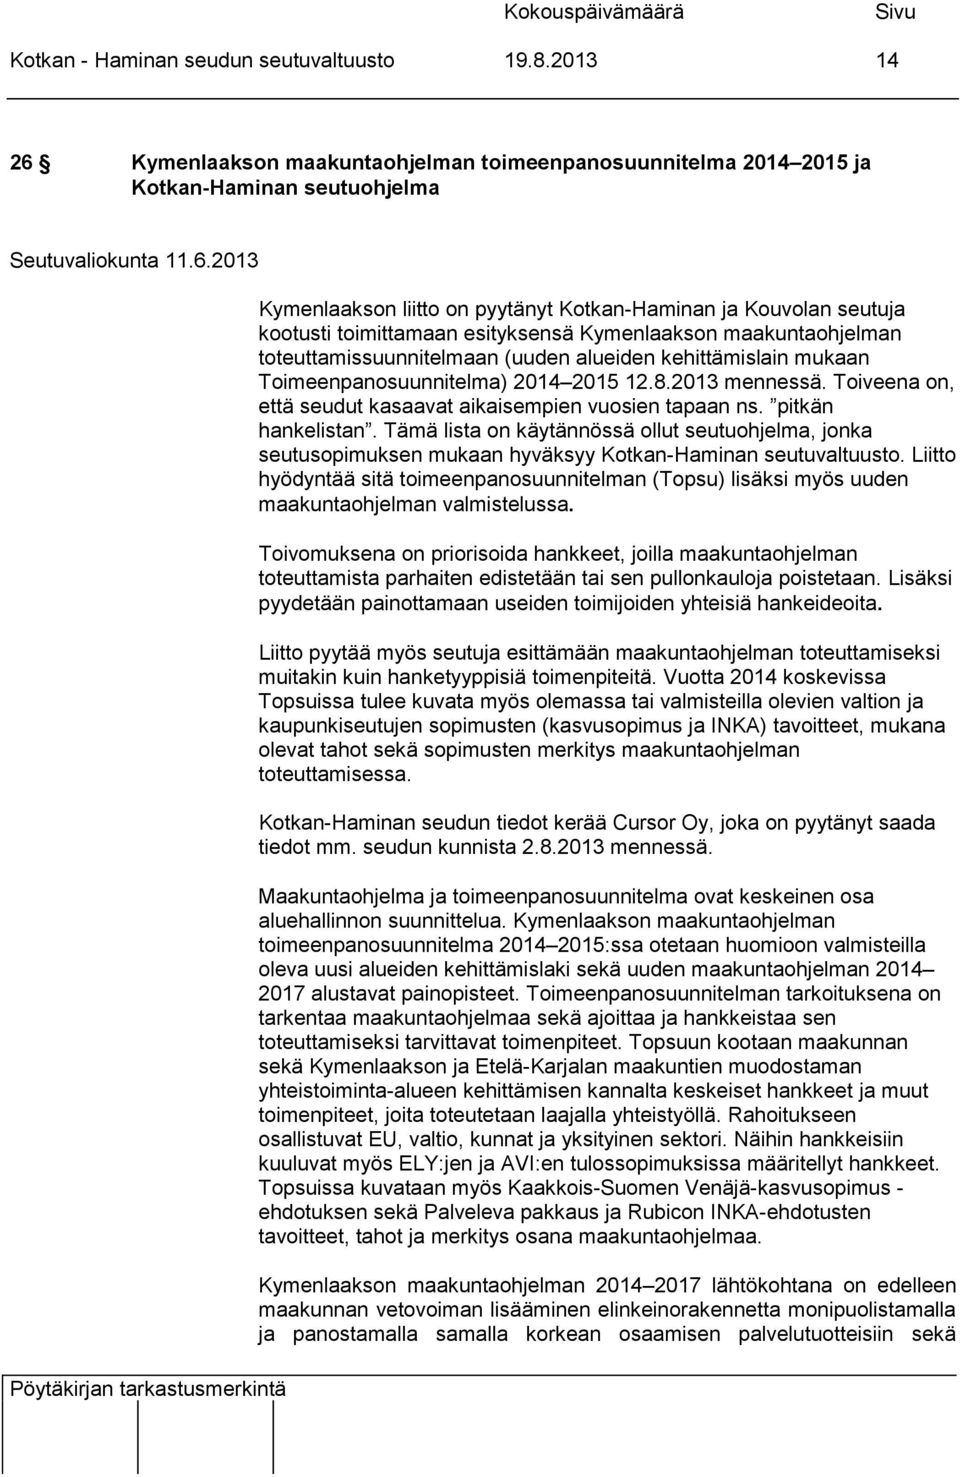 2013 Kymenlaakson liitto on pyytänyt Kotkan-Haminan ja Kouvolan seutuja kootusti toimittamaan esityksensä Kymenlaakson maakuntaohjelman toteuttamissuunnitelmaan (uuden alueiden kehittämislain mukaan